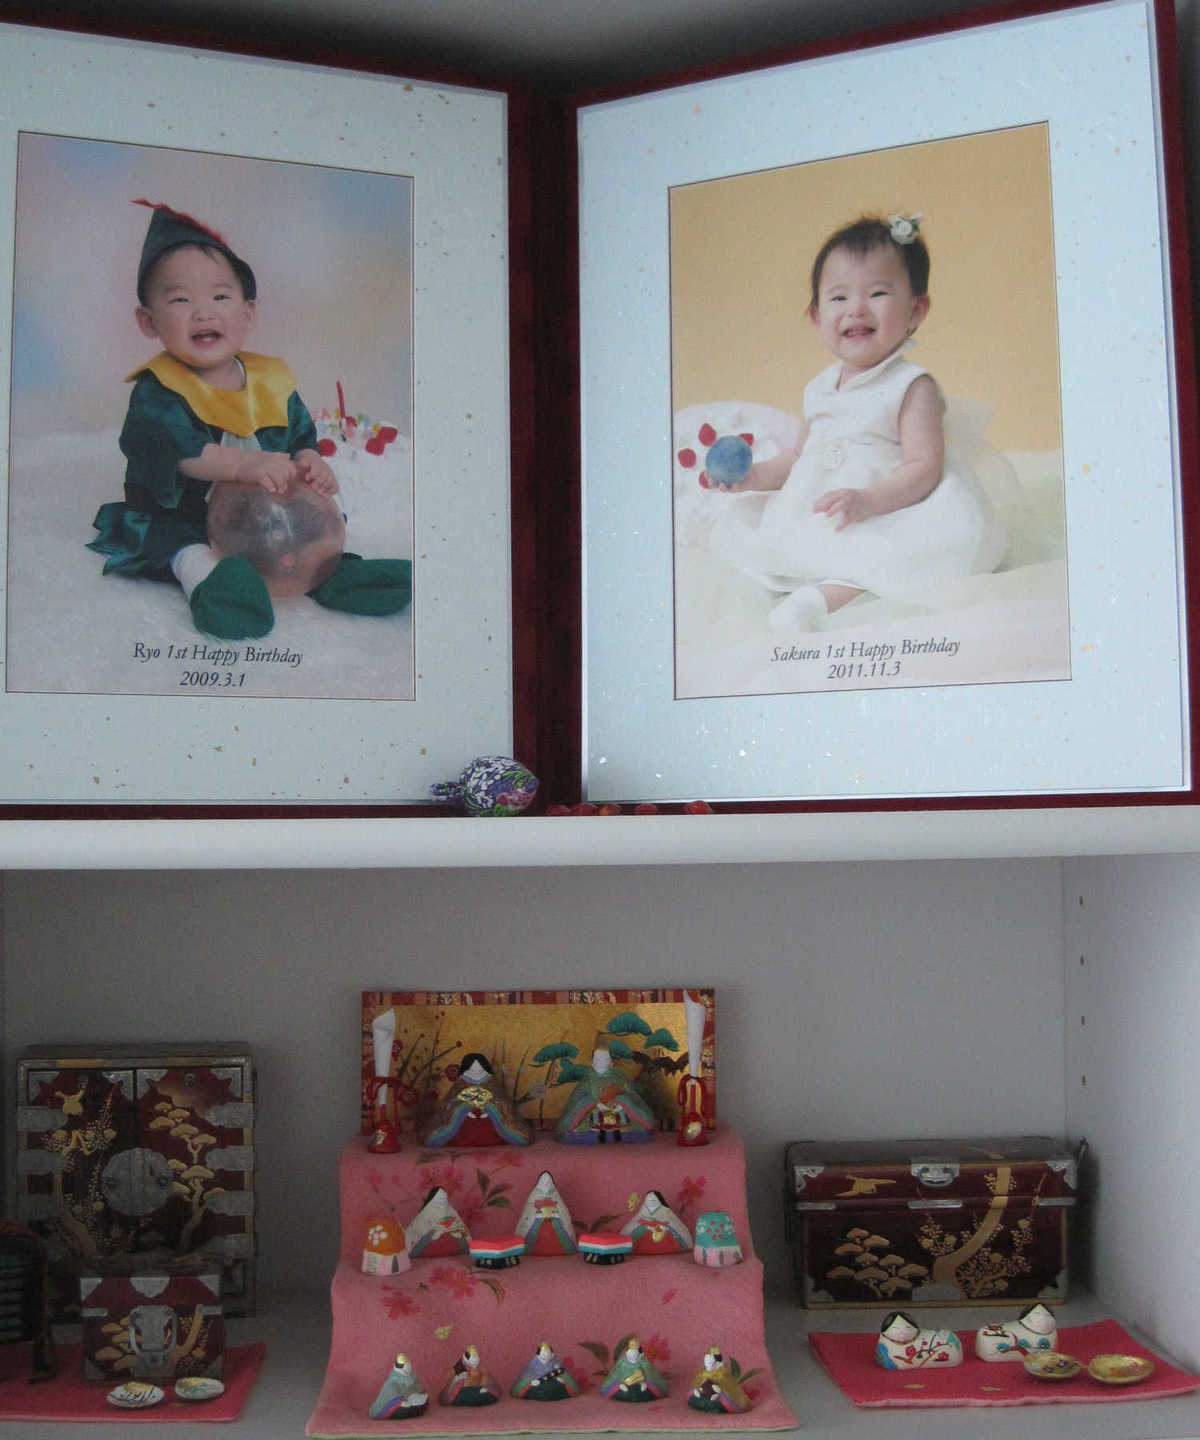 シンガポールから、ミニュチュアの雛人形セット「小さき物の世界」を購入されたお客様の雛祭りの写真で、リビングの本棚に飾られているそうです。